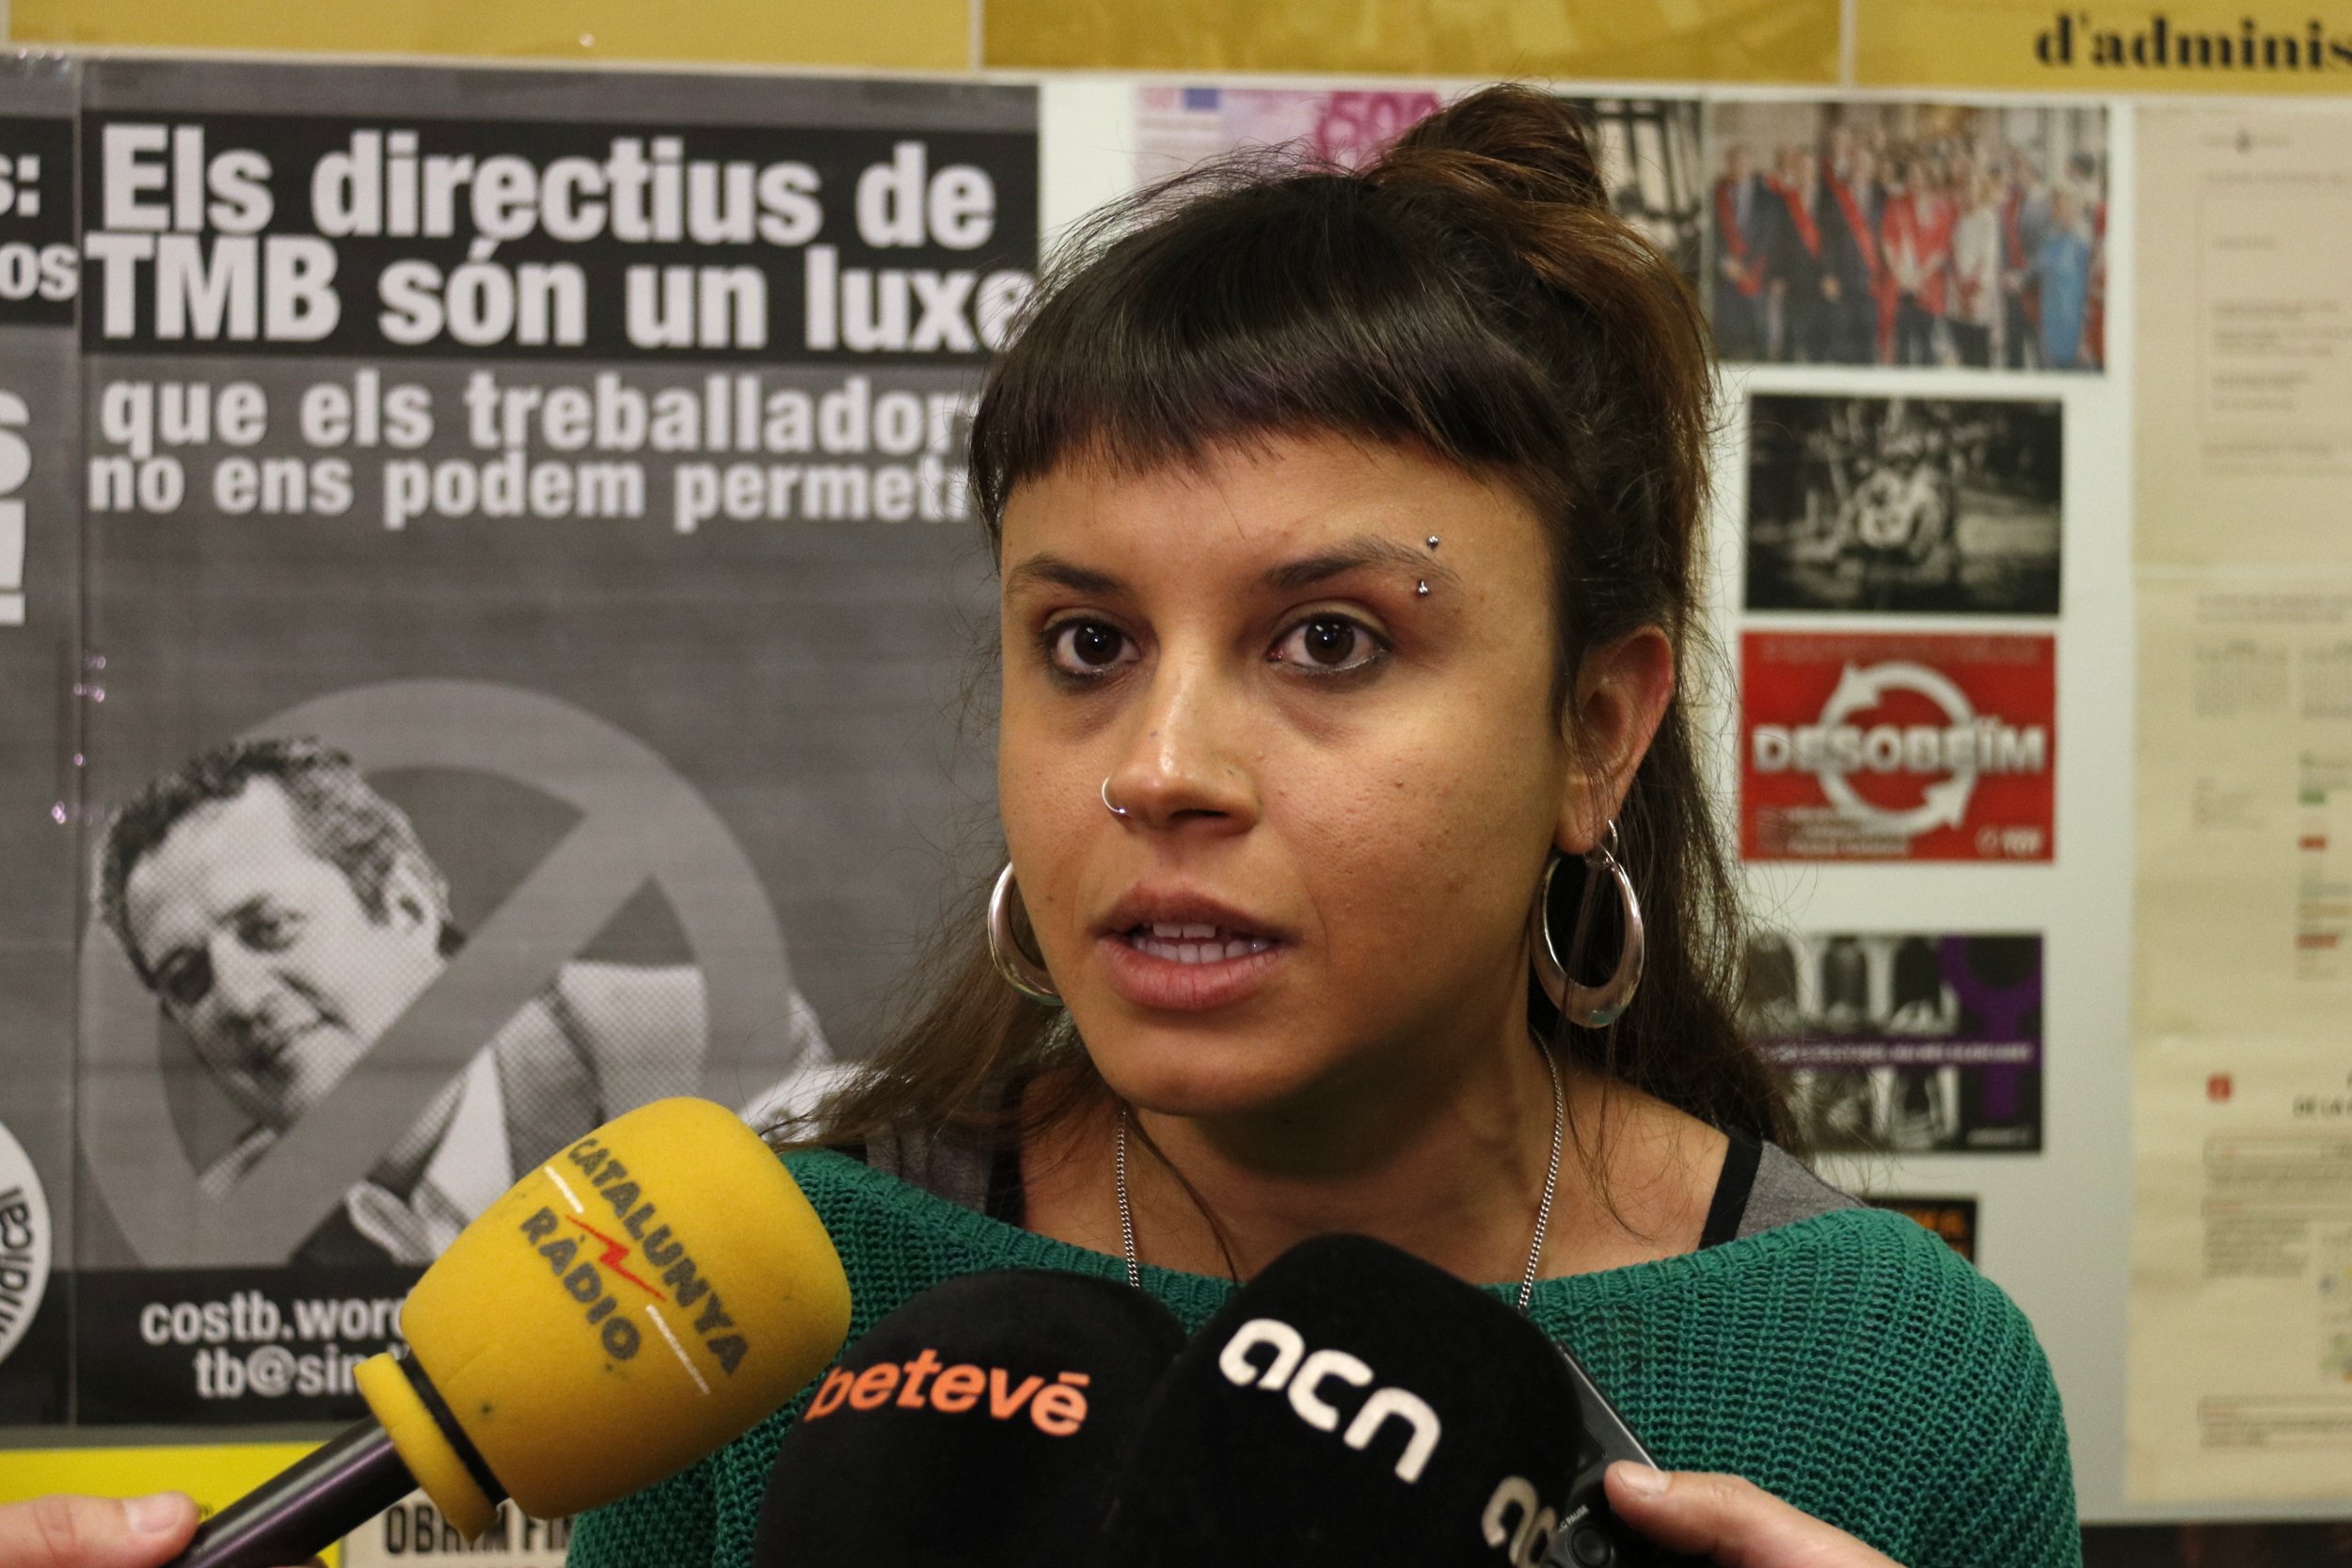 Imputada Maria Rovira (CUP) per acusar els Mossos d'"executar" terroristes